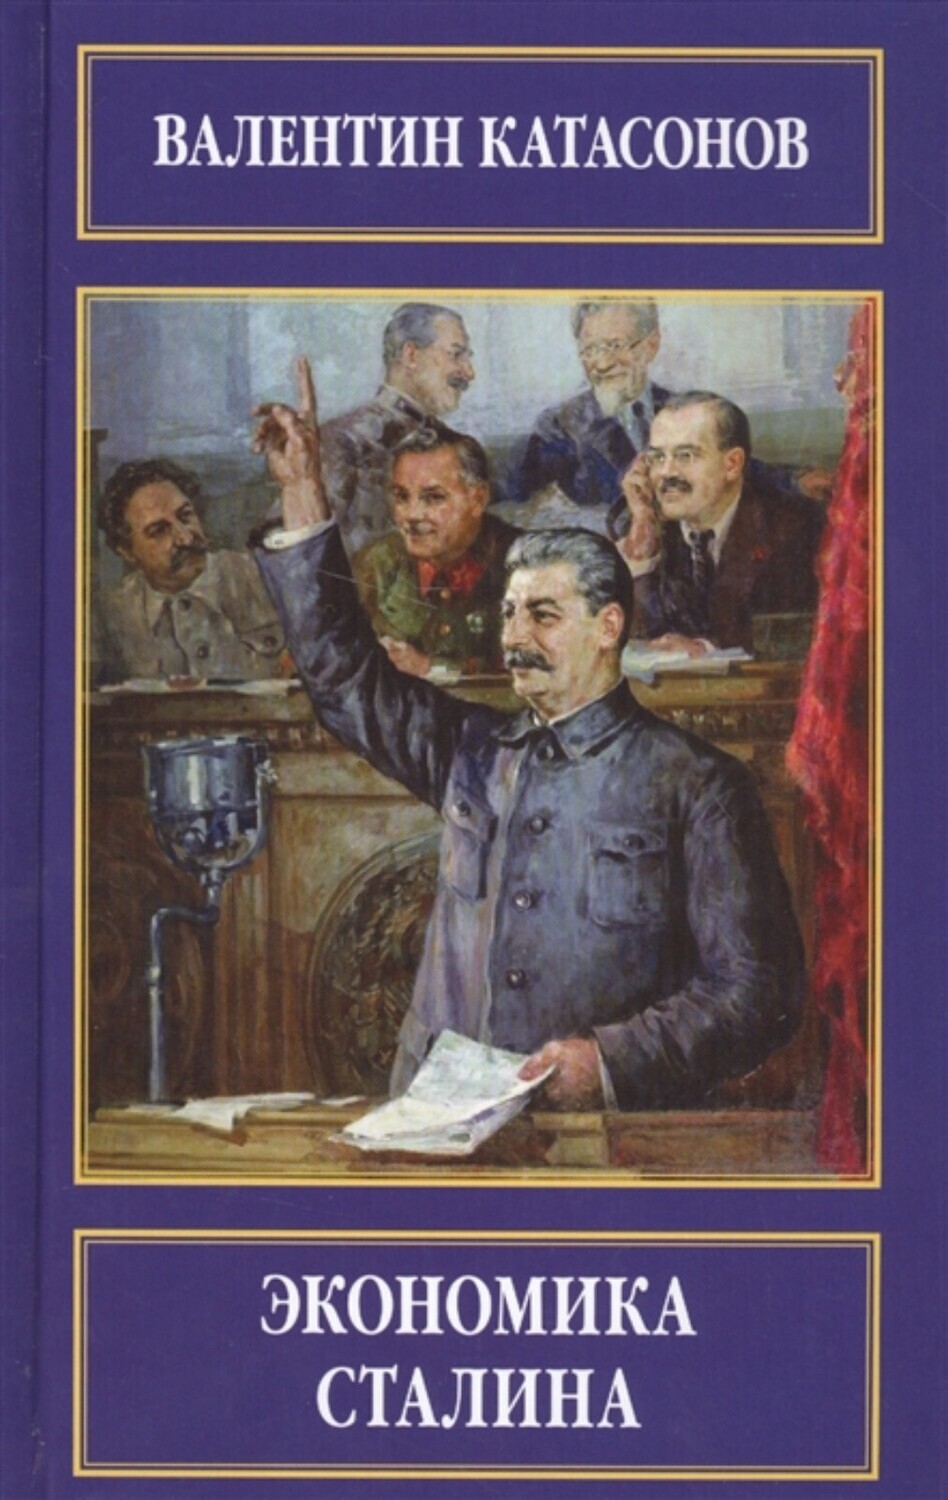 "Экономика Сталина". В. Катасонов